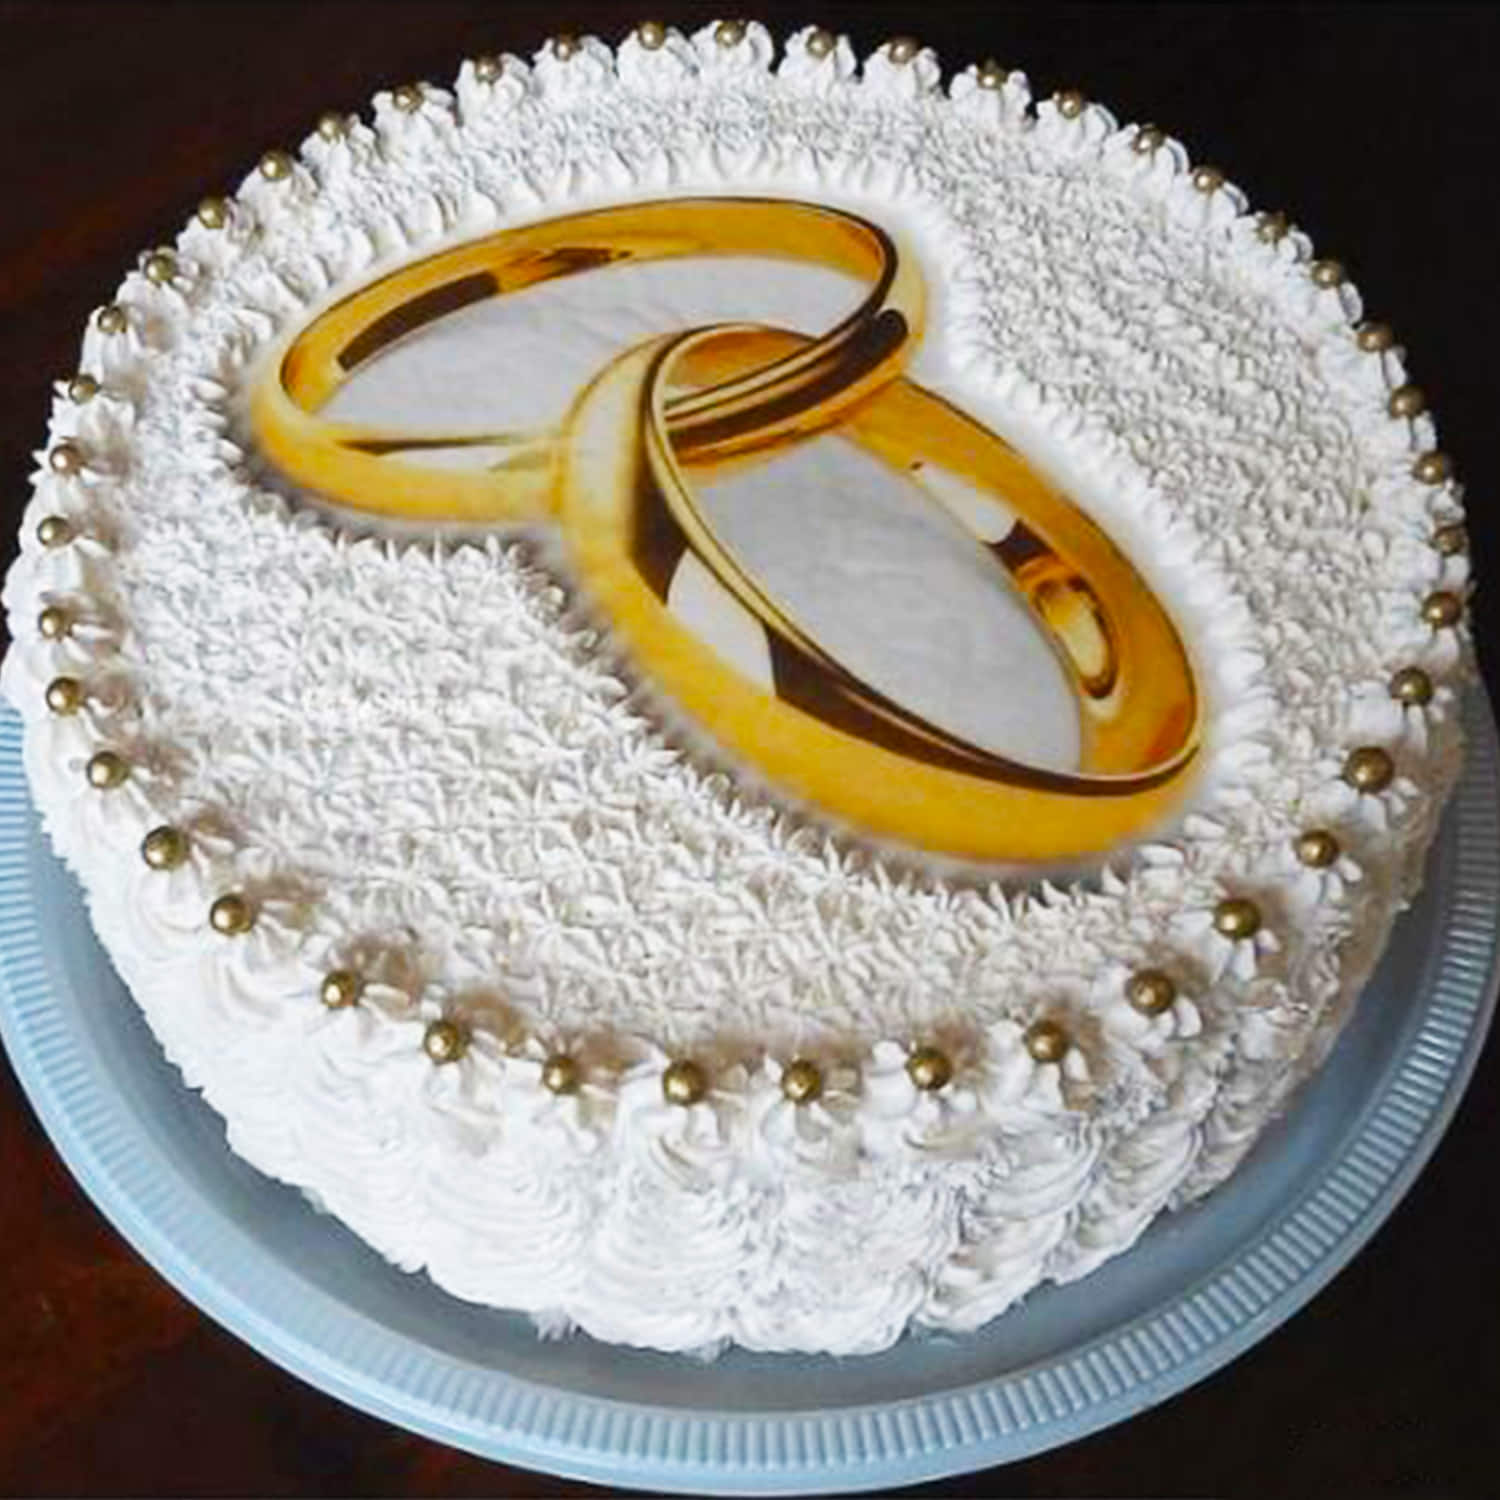 Ring ceremony cake #reelsinstagram #reels #trending #cakedesign | Instagram